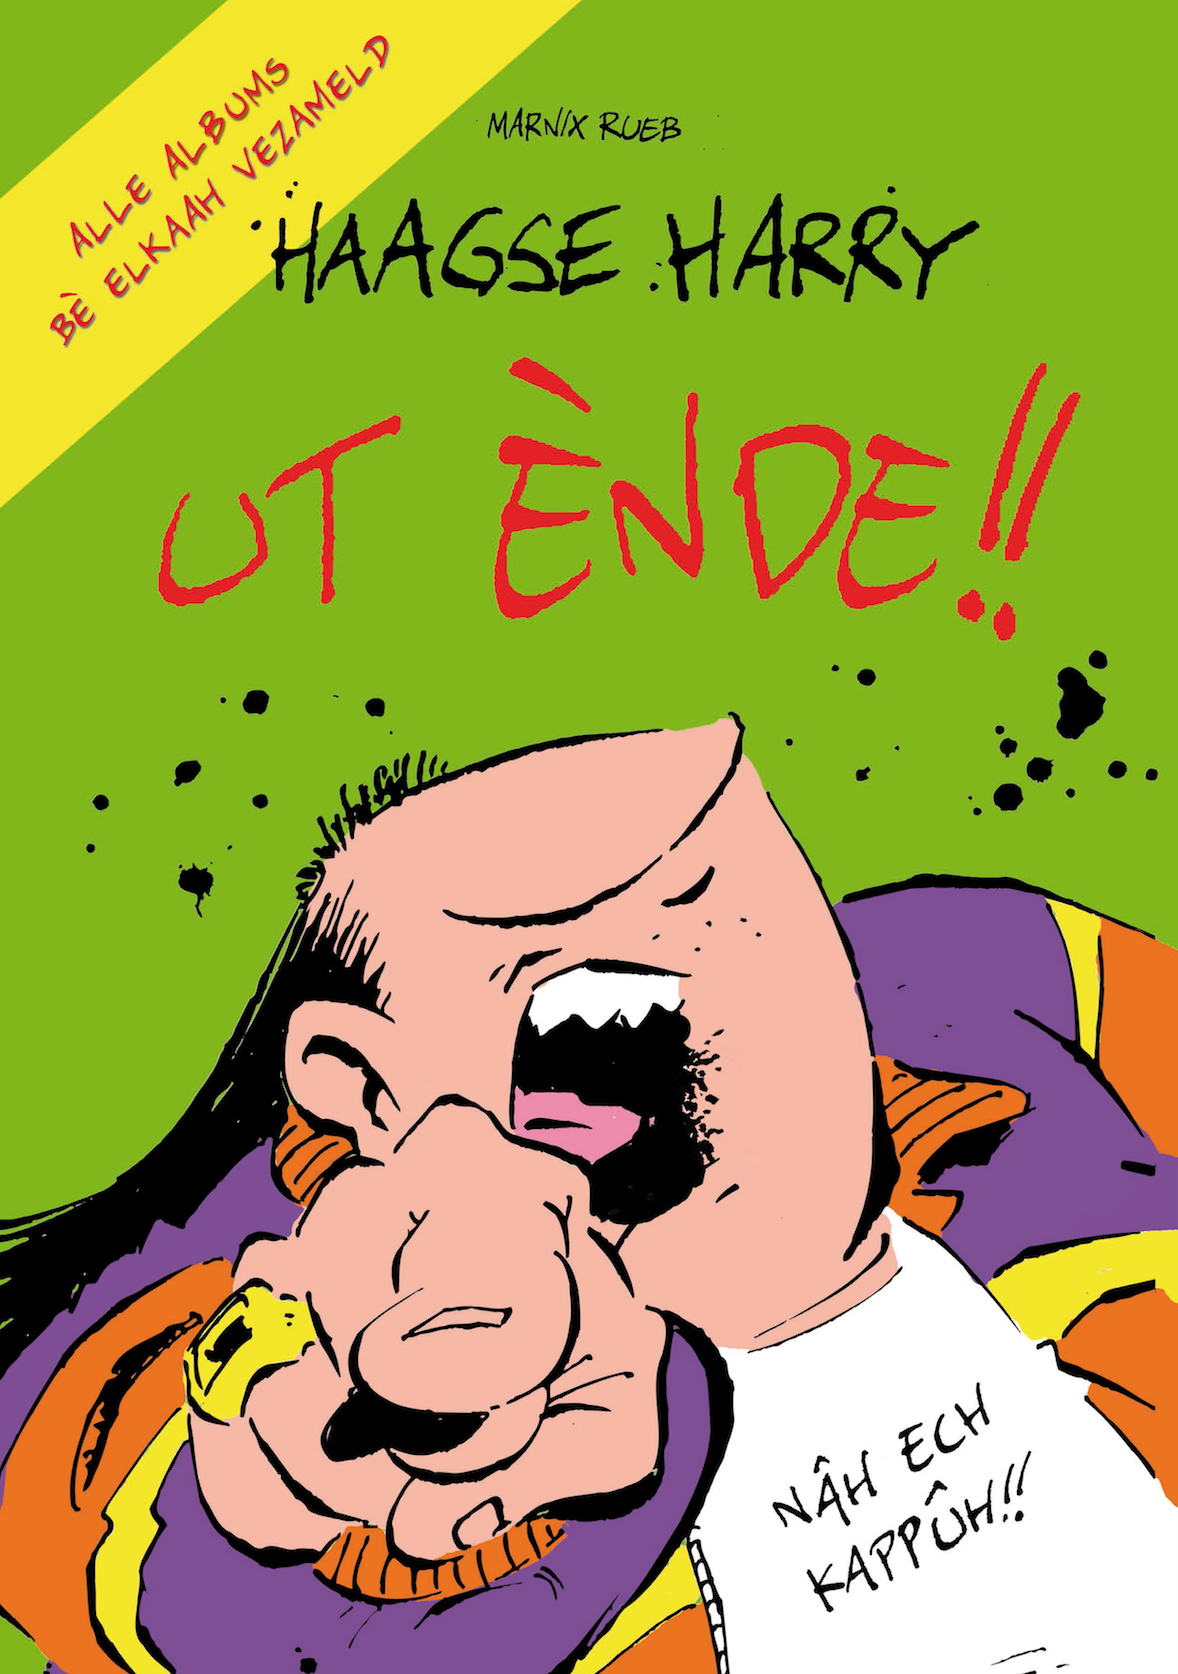 Haagse Harry verzamelbox - Ut Ènde - met 30 euro korting en gratis kado!